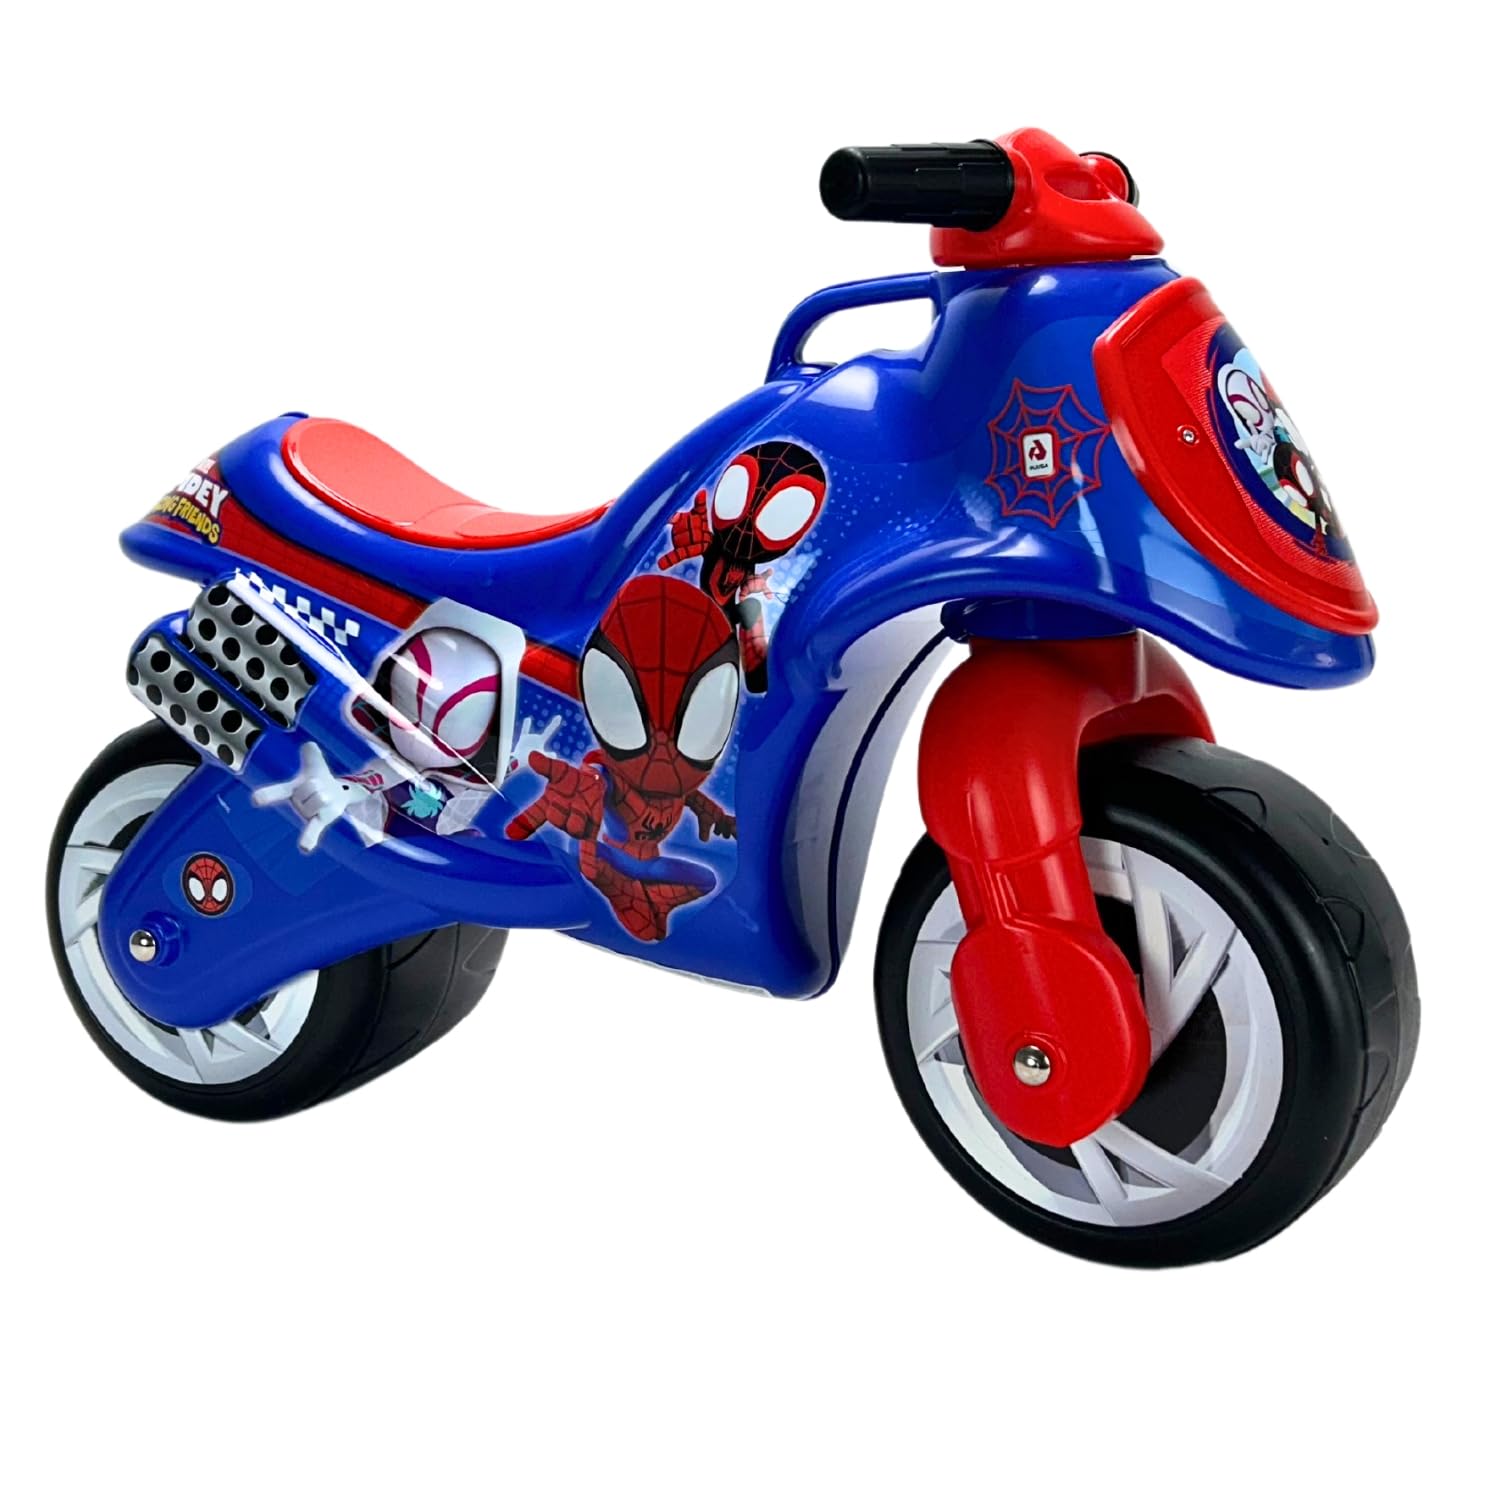 INJUSA - Moto Laufrad Neox Spiderman, Ride on für Kinder von 18 bis 36 Monaten, mit breite Kunststoffräder, Tragegriff für die Eltern, dauerhafte und wasserfeste Dekoration, Blaue Farbe